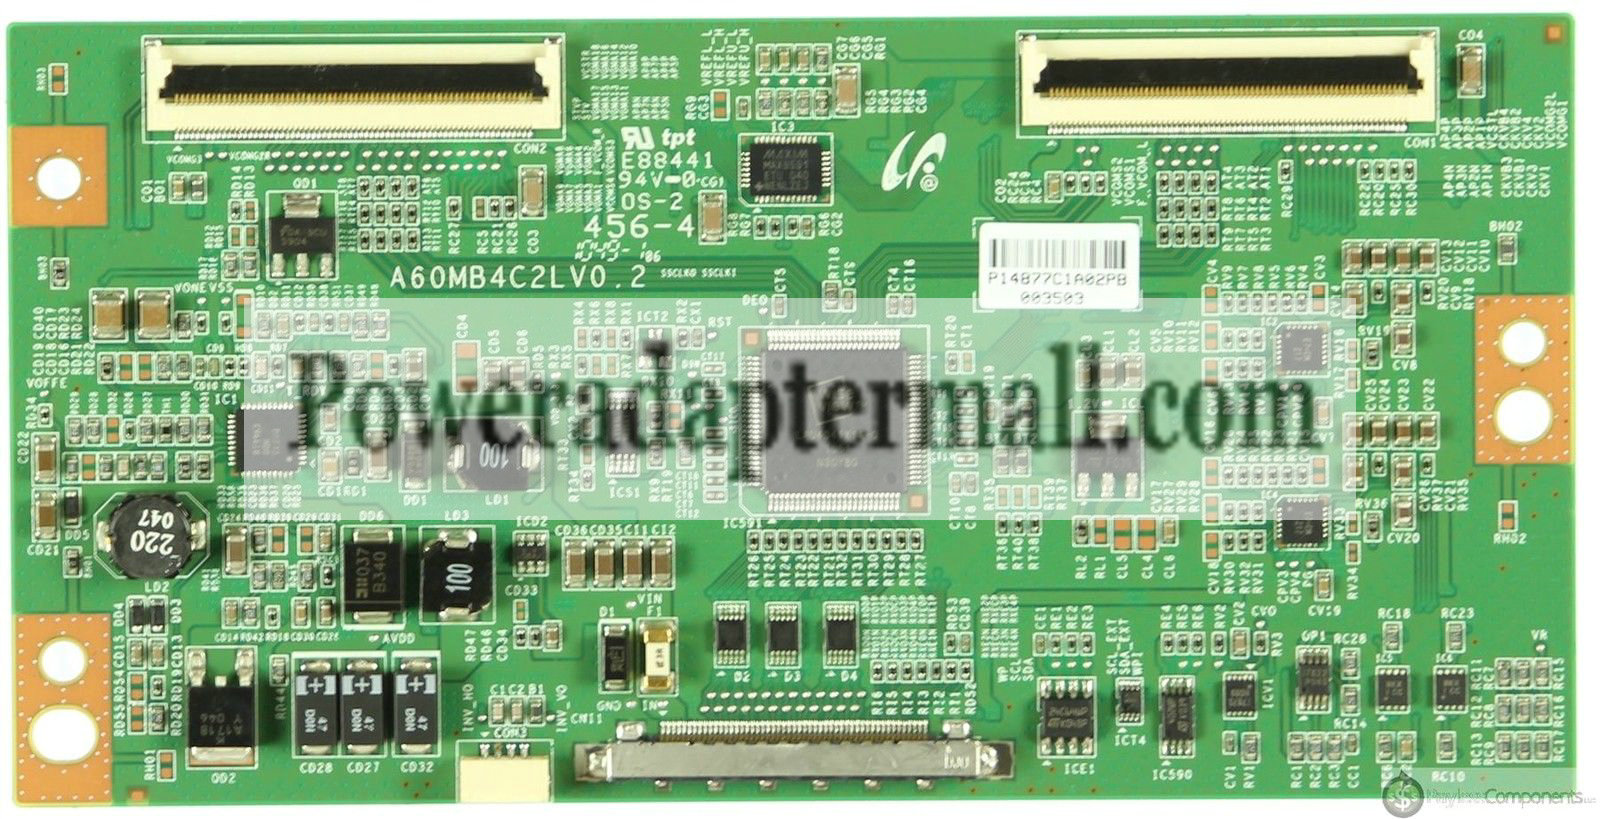 Hisense TLM46V66PK lta460hm03 T-CON logic Board a60mb4c2lv0.2